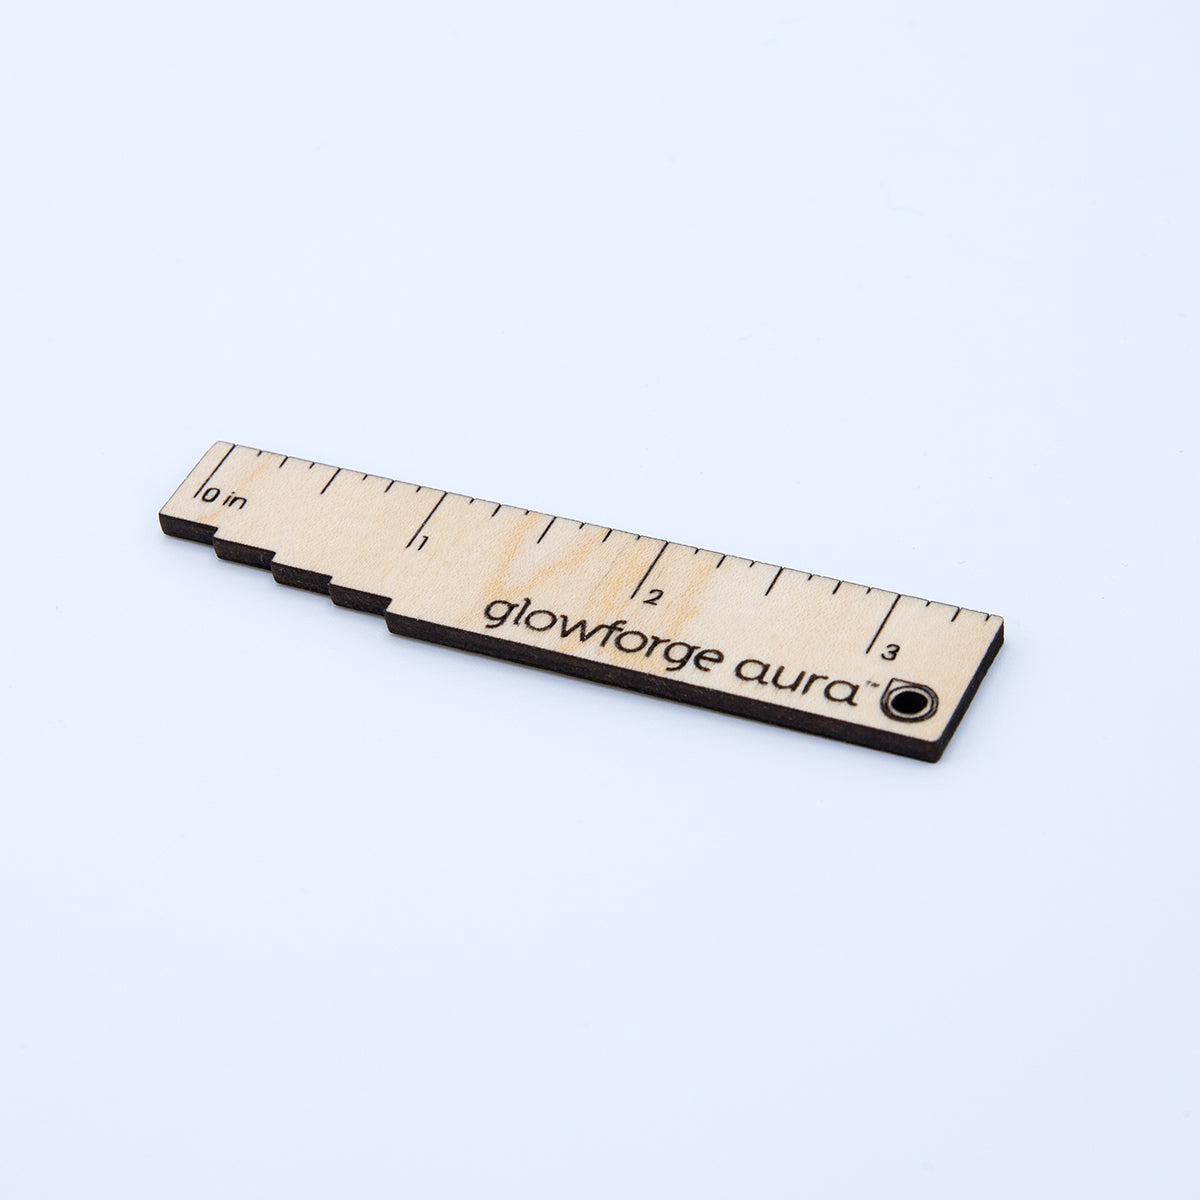 Mini Material Measuring Ruler (Imperial)